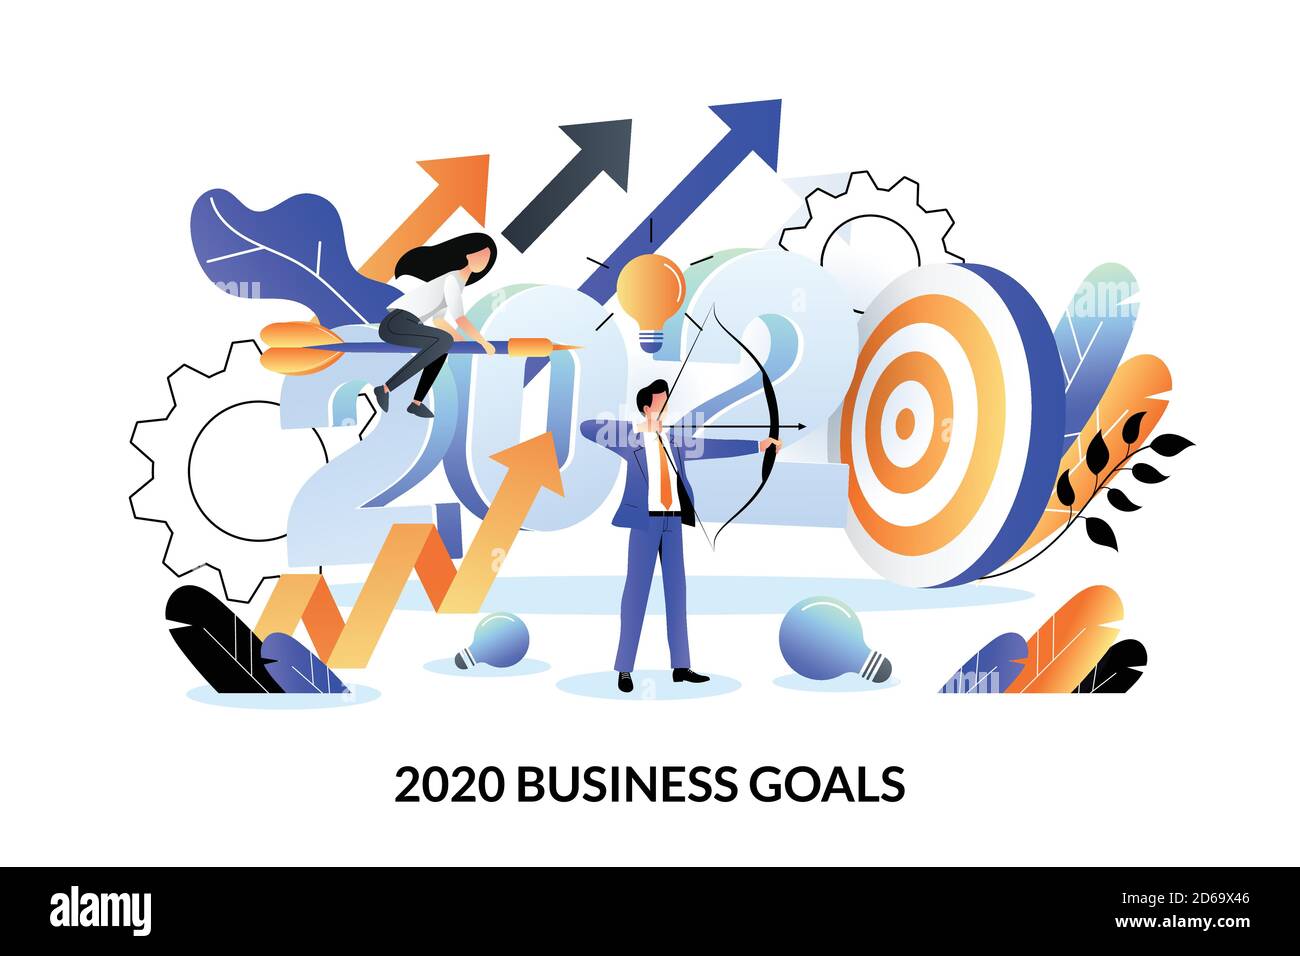 Obiettivi di business, strategia e piano di successo futuro per il nuovo anno 2020. Illustrazione vettoriale a cartoni animati piatti per la progettazione di banner o poster per la landing page Web Illustrazione Vettoriale